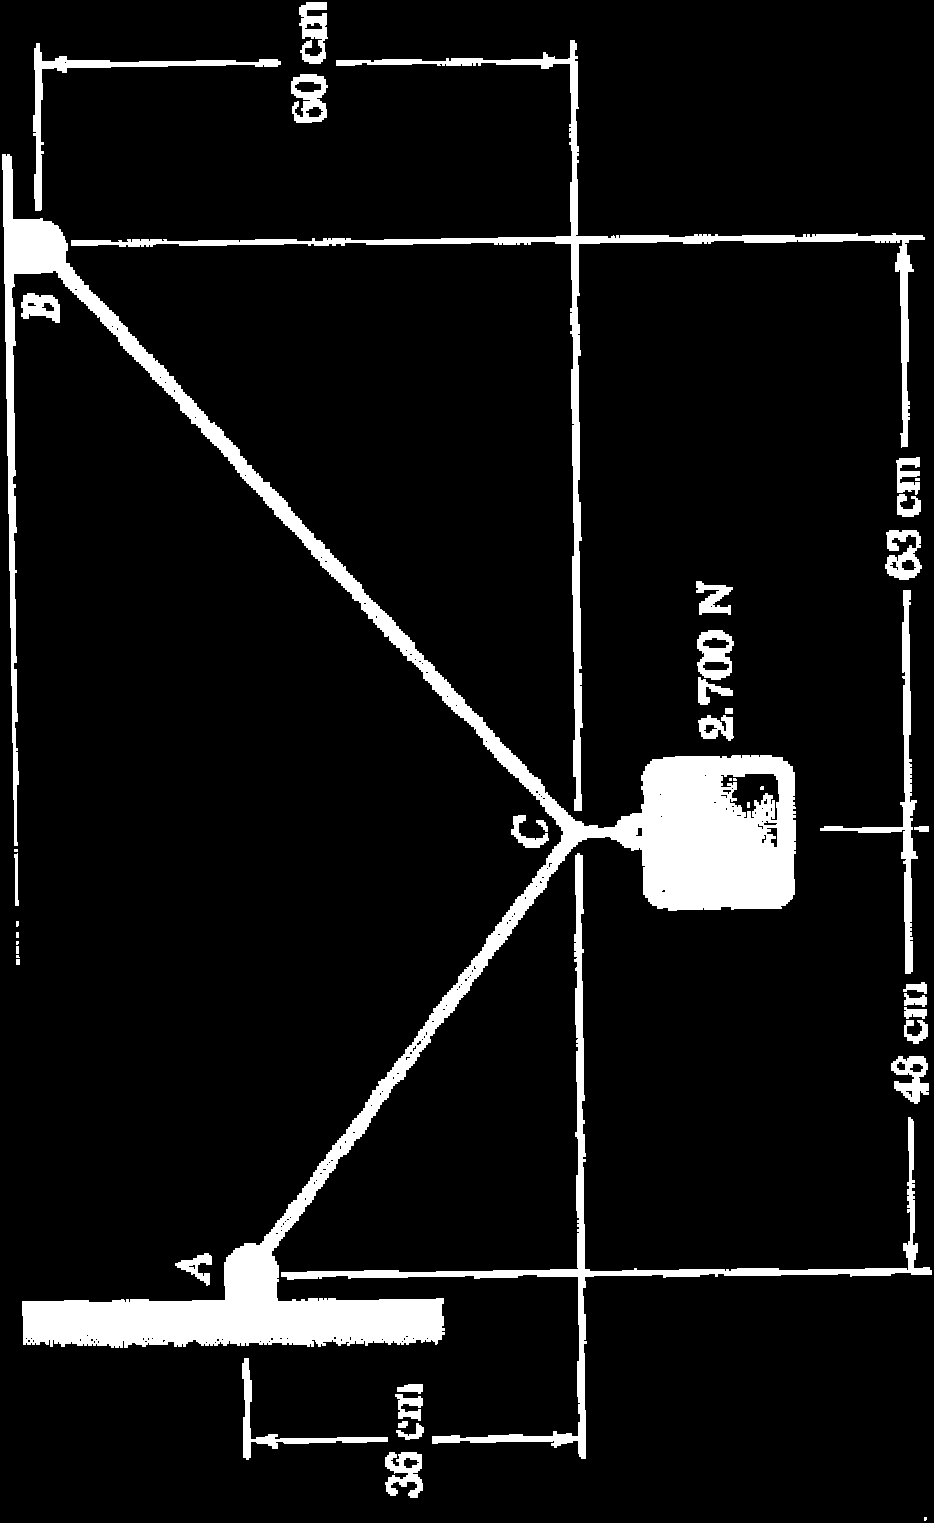 Pblemas que Envlvem Equilíbi de uma Patícula Eecíci ci: P Dis cabs estã ligads em C e sã caegads tal cm msta a figua.